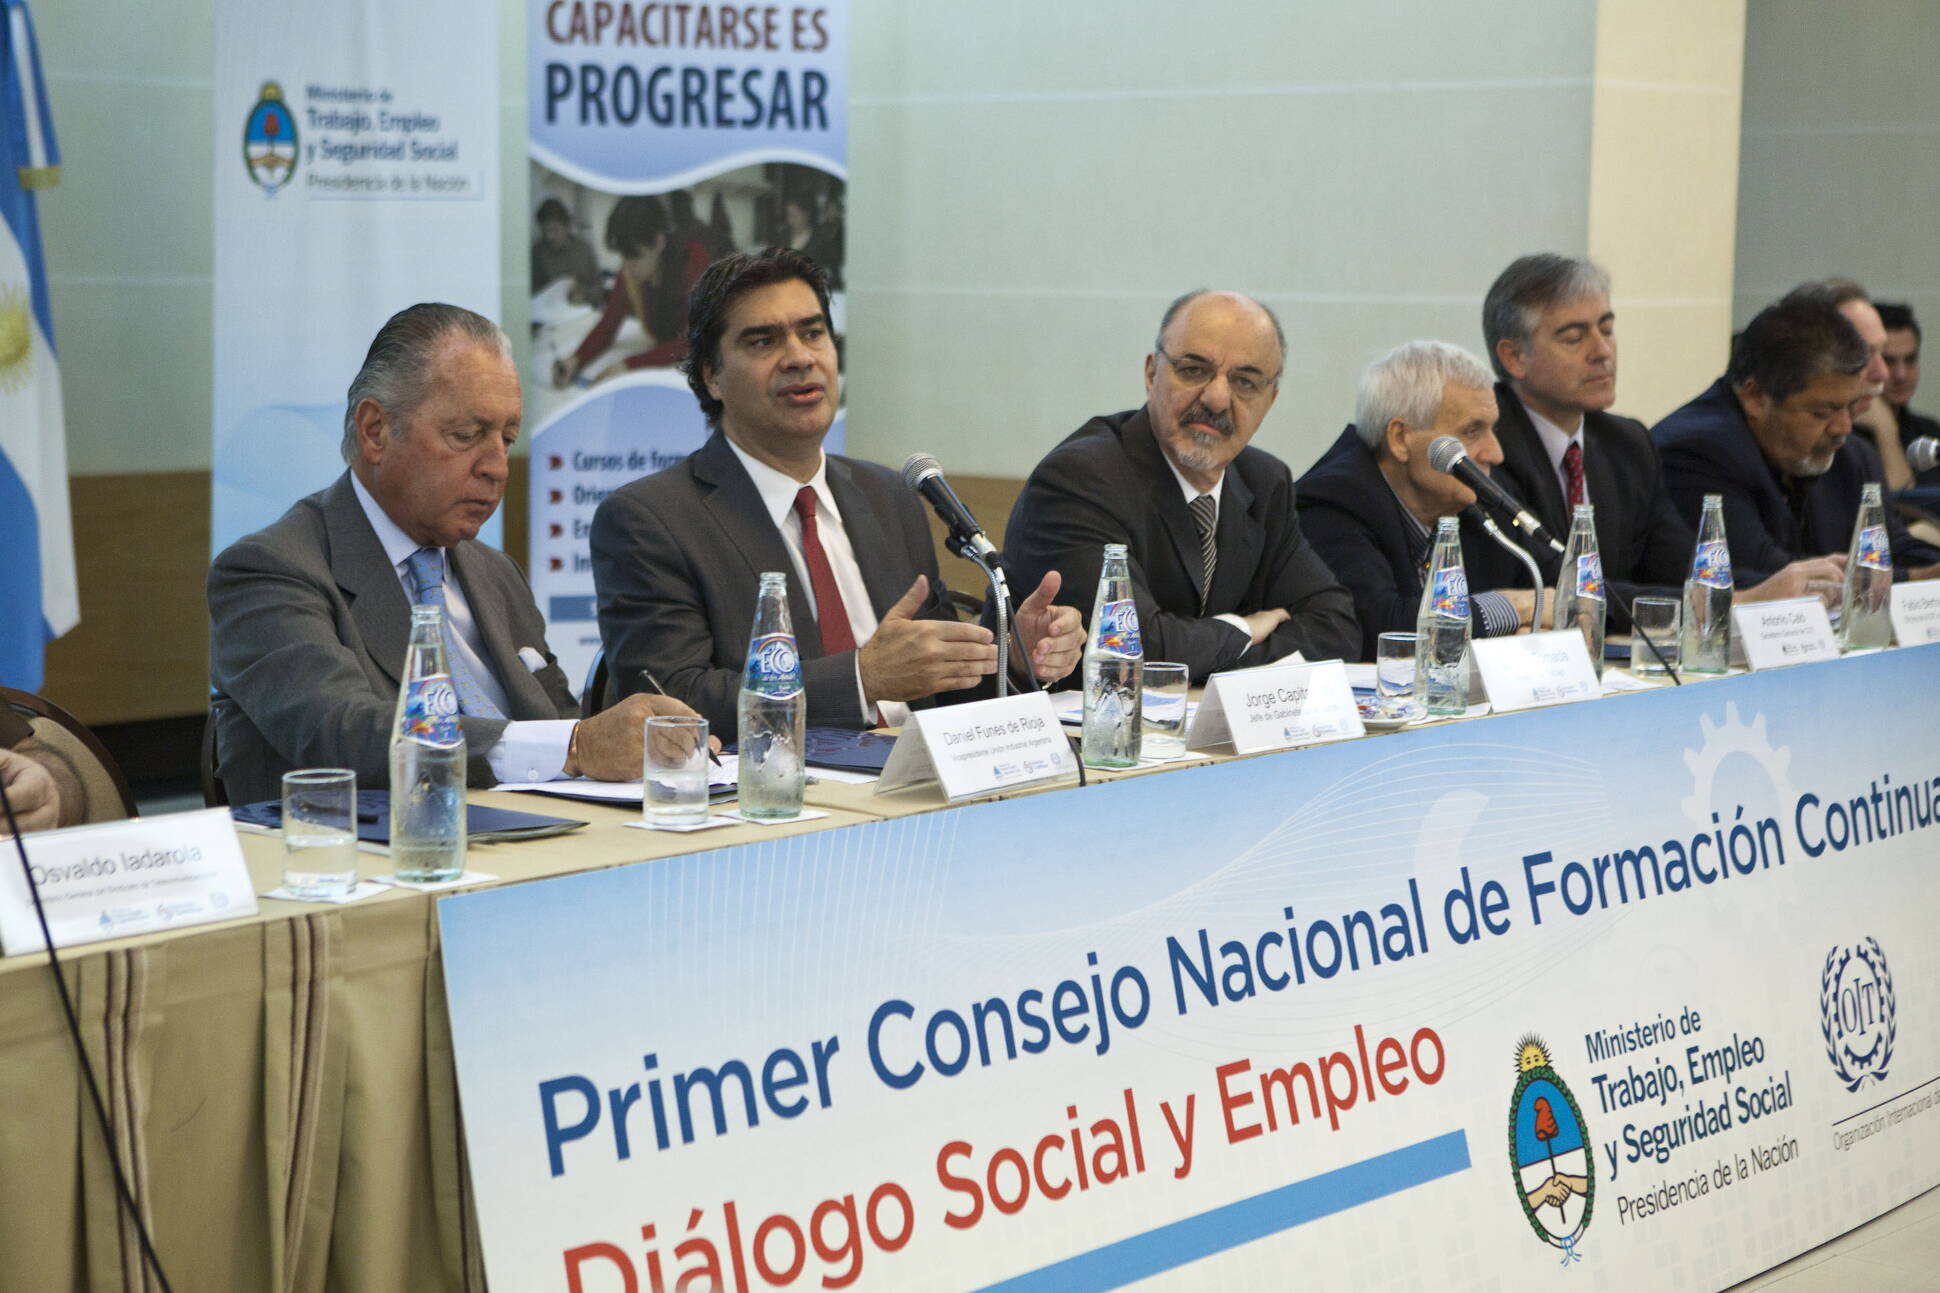 Capitanich participó del Primer Consejo Nacional de Formación Continua: Diálogo Social y Empleo